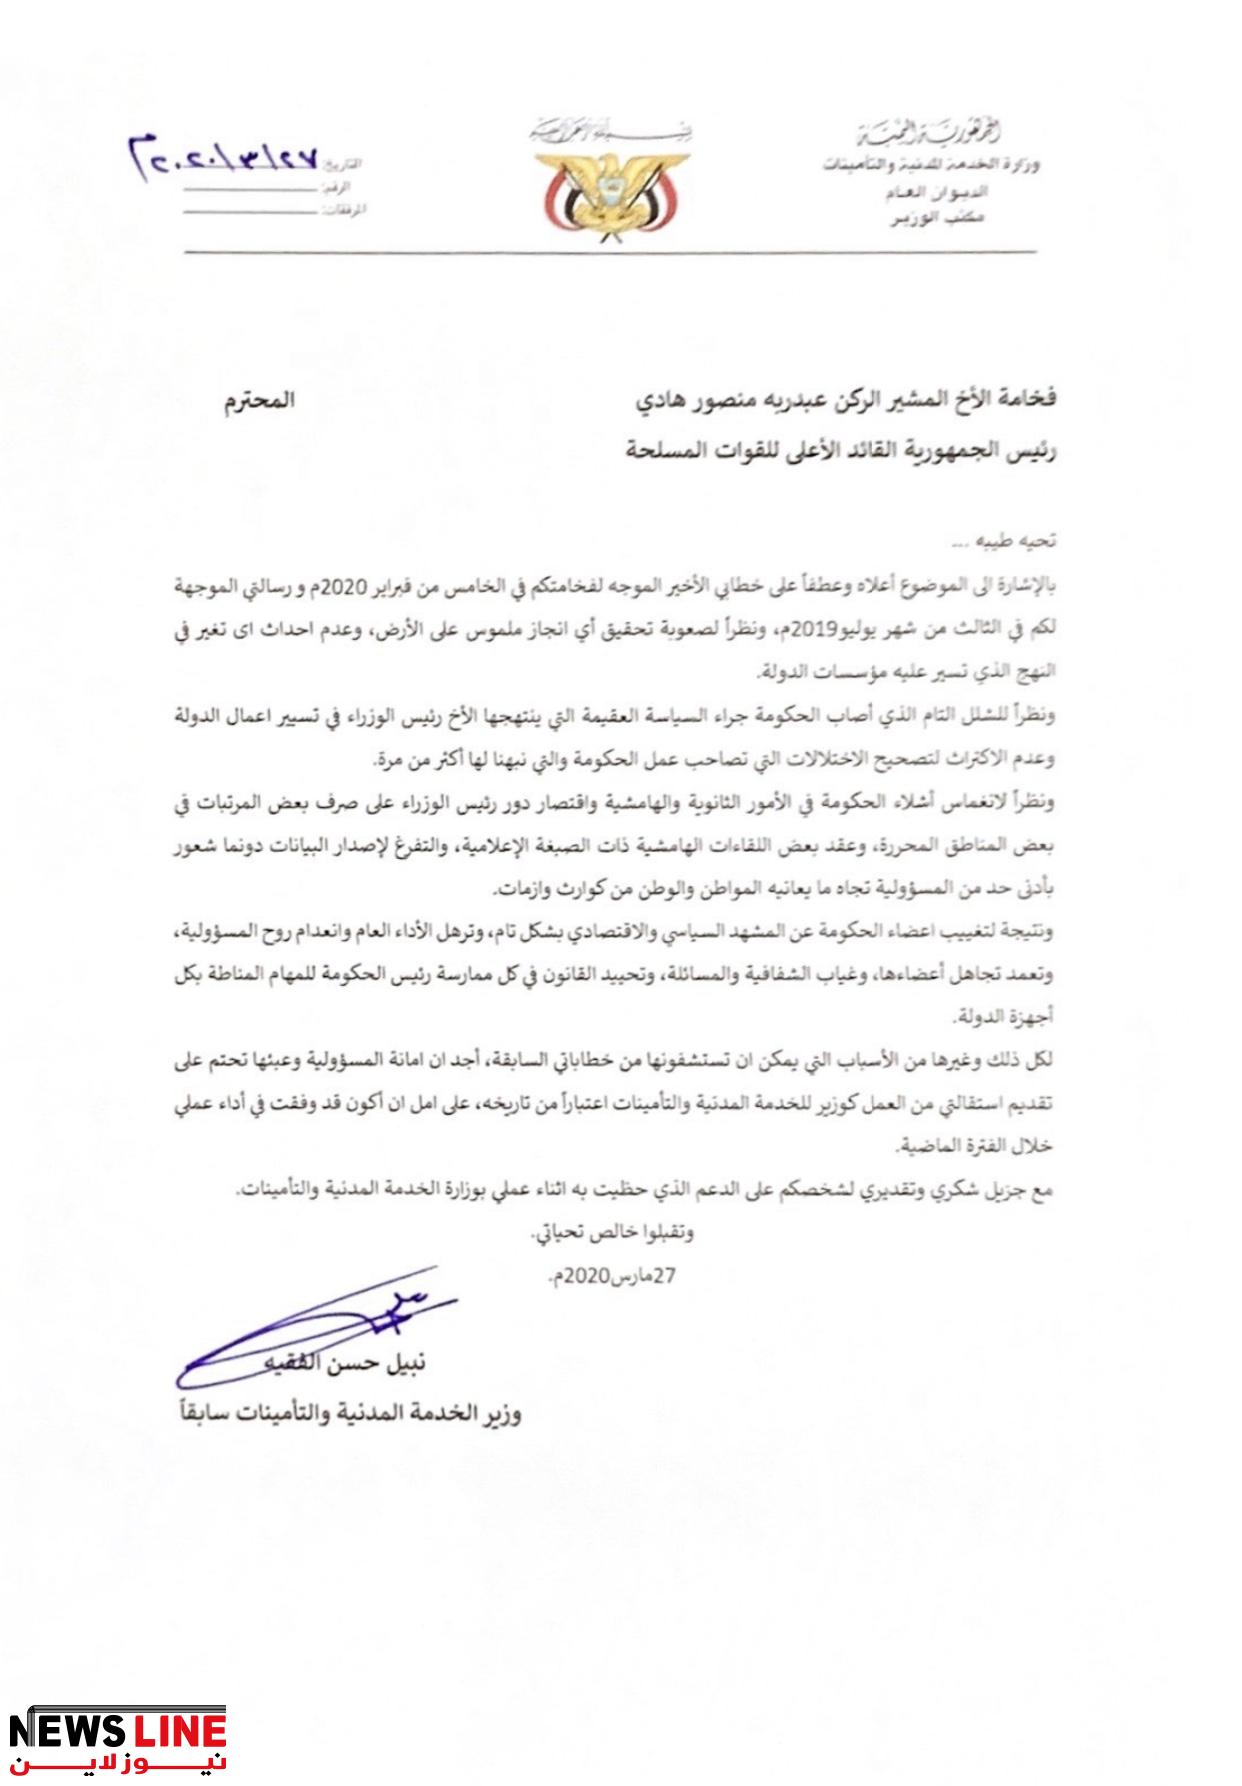 عاجل وبالوثيقة  : وزير في الشرعية يقدم  استقالته من منصبه للرئيس هادي  " الاسم و تفاصيل حصرية "